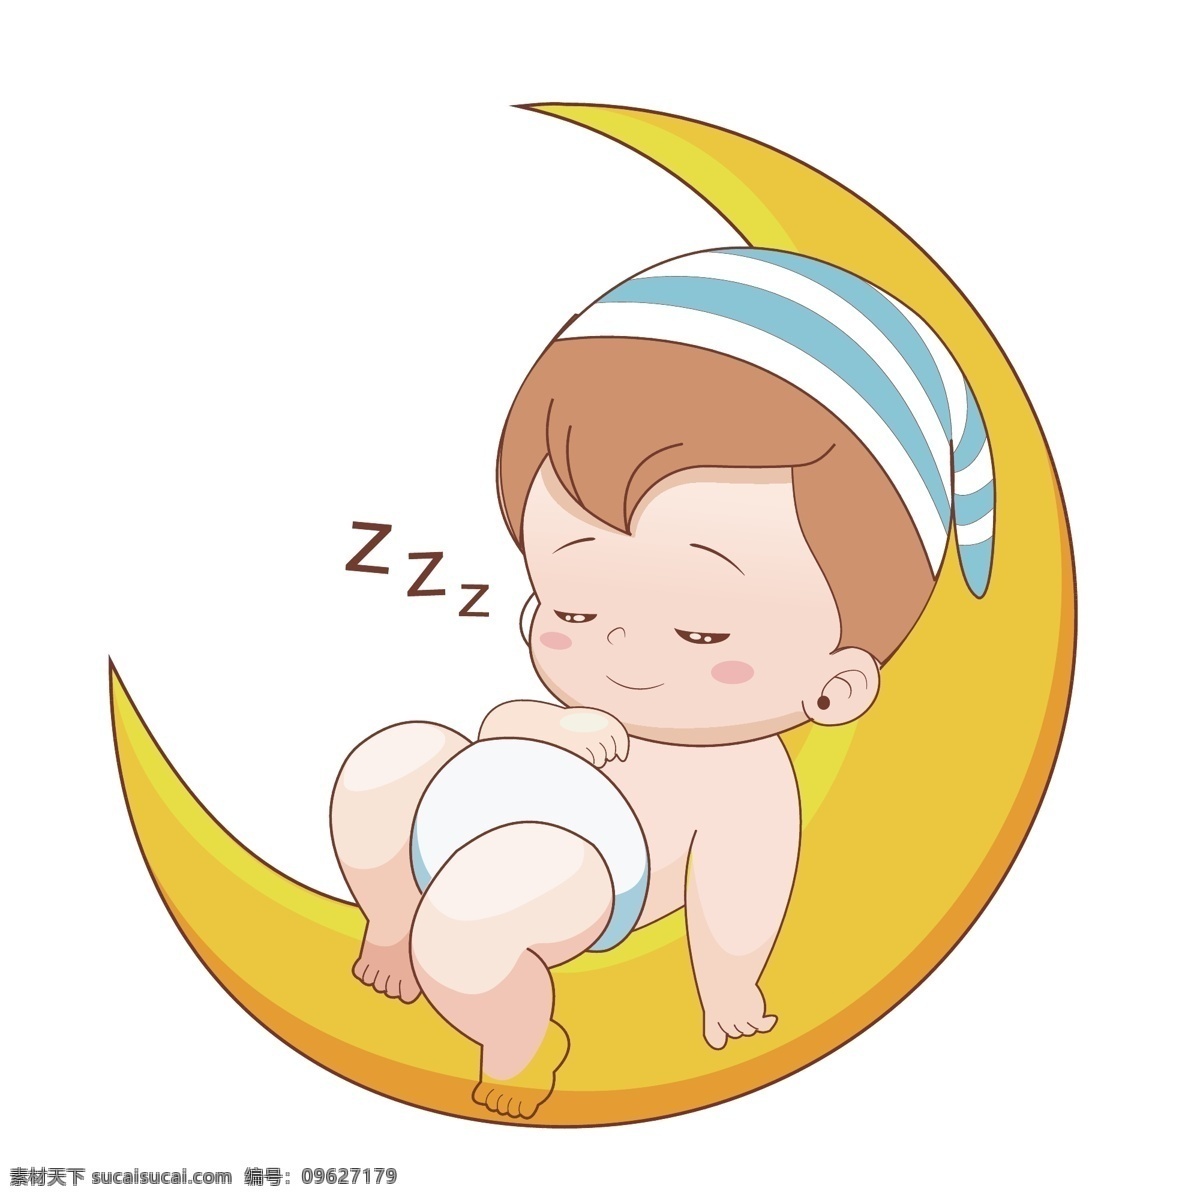 月亮 上 睡觉 小 男孩 月亮上 小男孩 月亮上睡觉 打盹 美梦 做梦 梦乡 卡通小男孩 插画 动漫动画 动漫人物